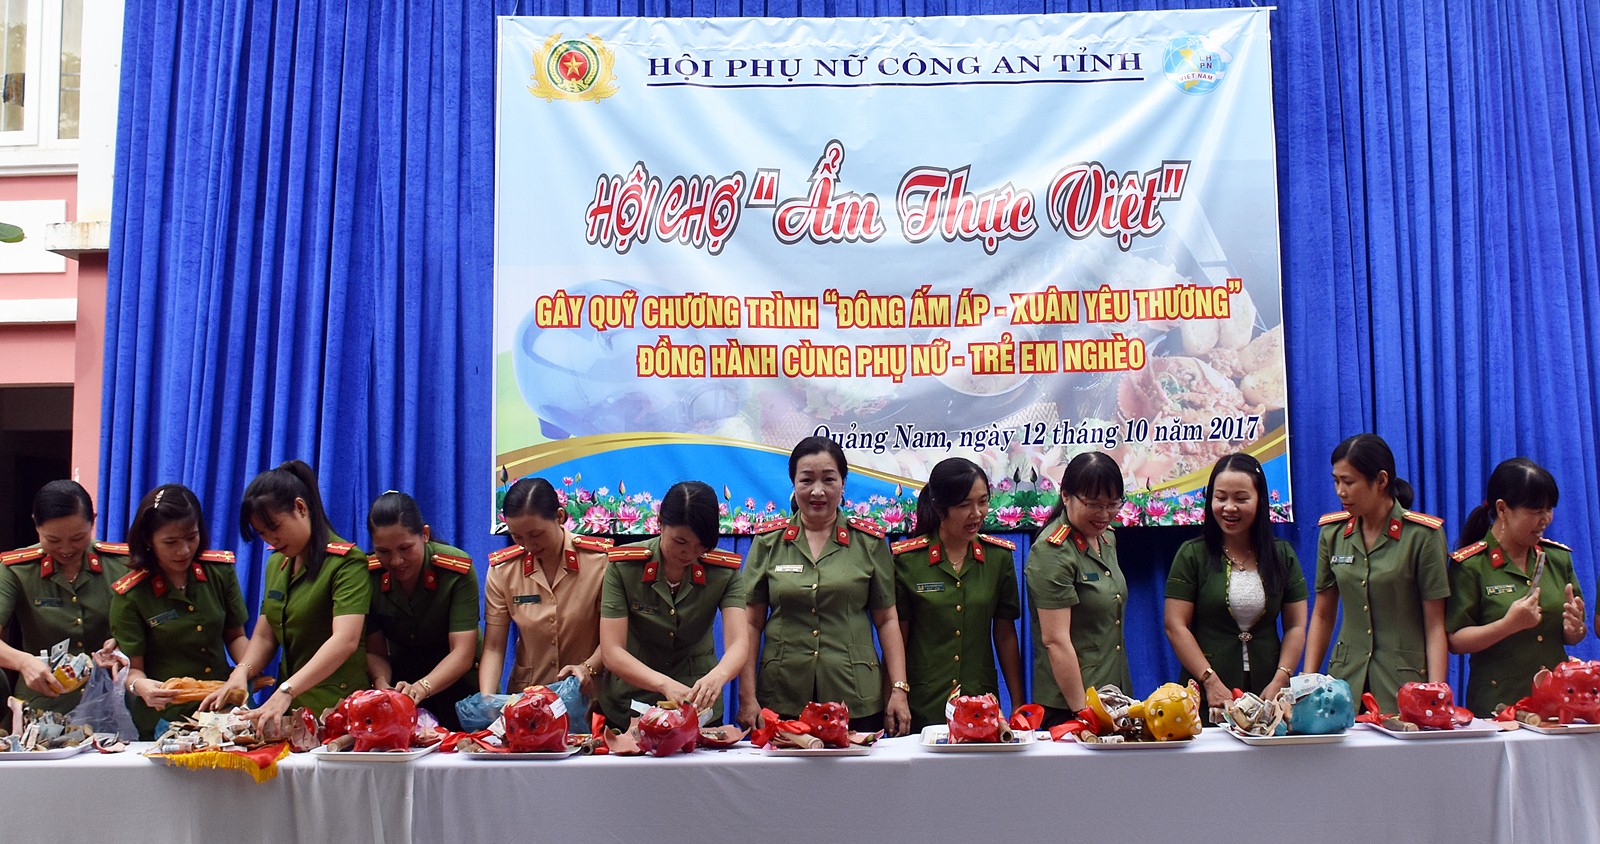 Lan tỏa phong trào “Nuôi heo đất” trong phụ nữ Công an Quảng Nam